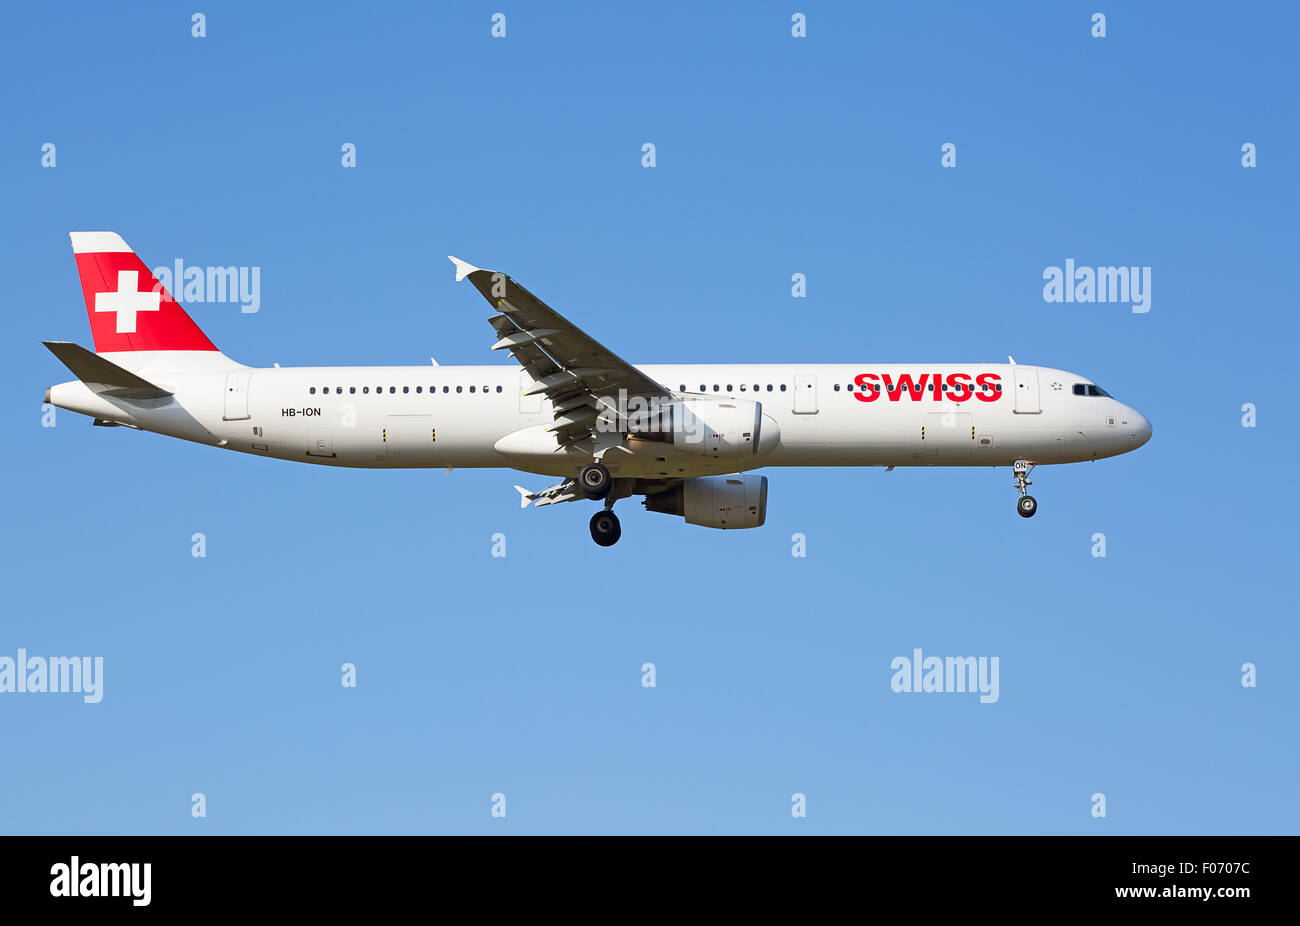 ZURICH - JULY 18: Airbus A-321 landing in Zurich airport after short haul flight on July 18, 2015 in Zurich, Switzerland. Zurich Stock Photo